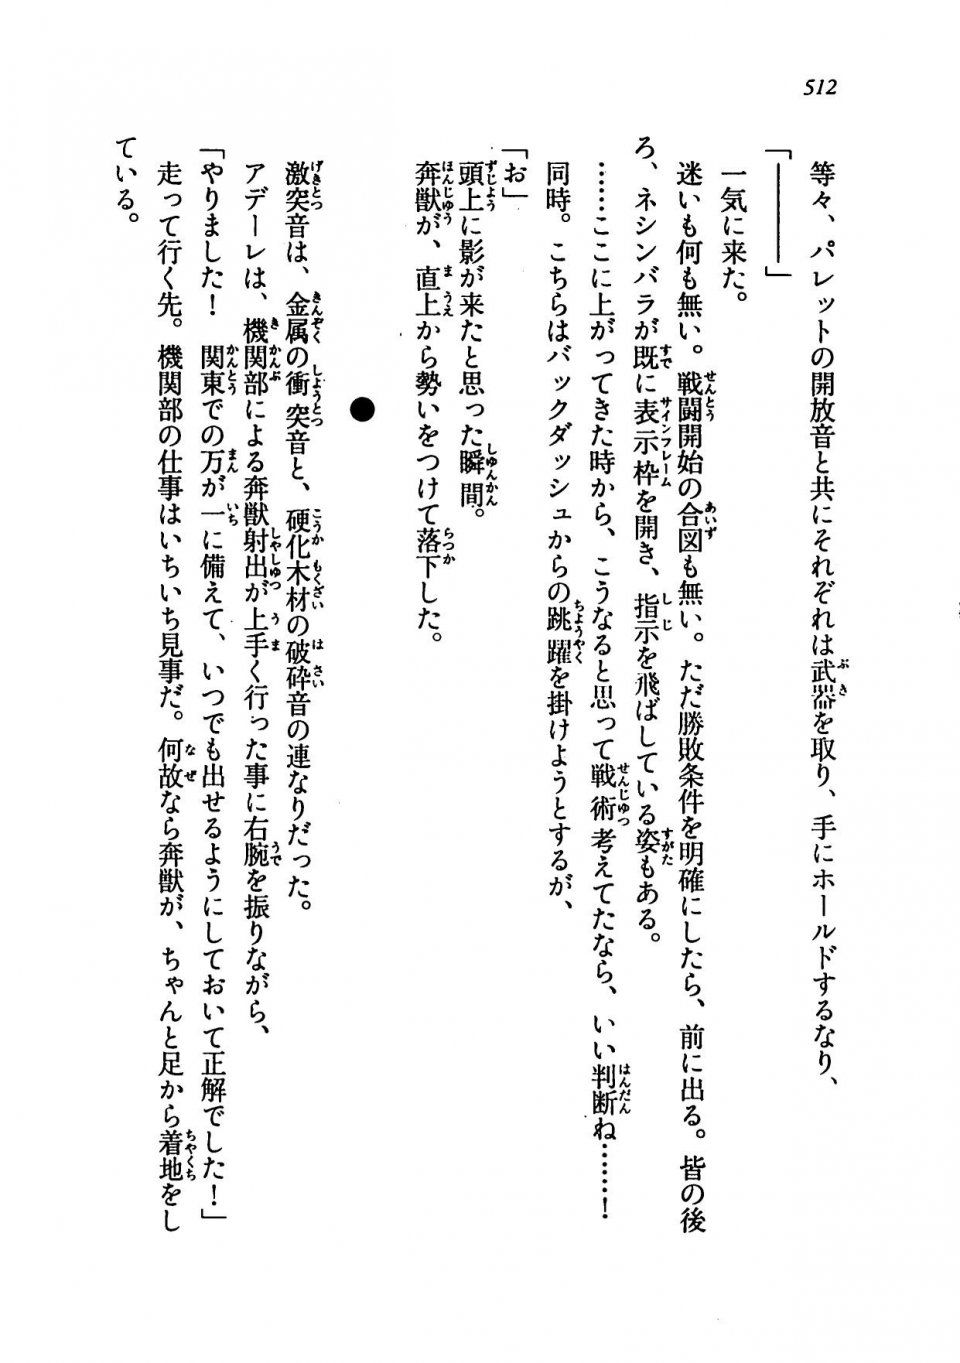 Kyoukai Senjou no Horizon LN Vol 19(8A) - Photo #512